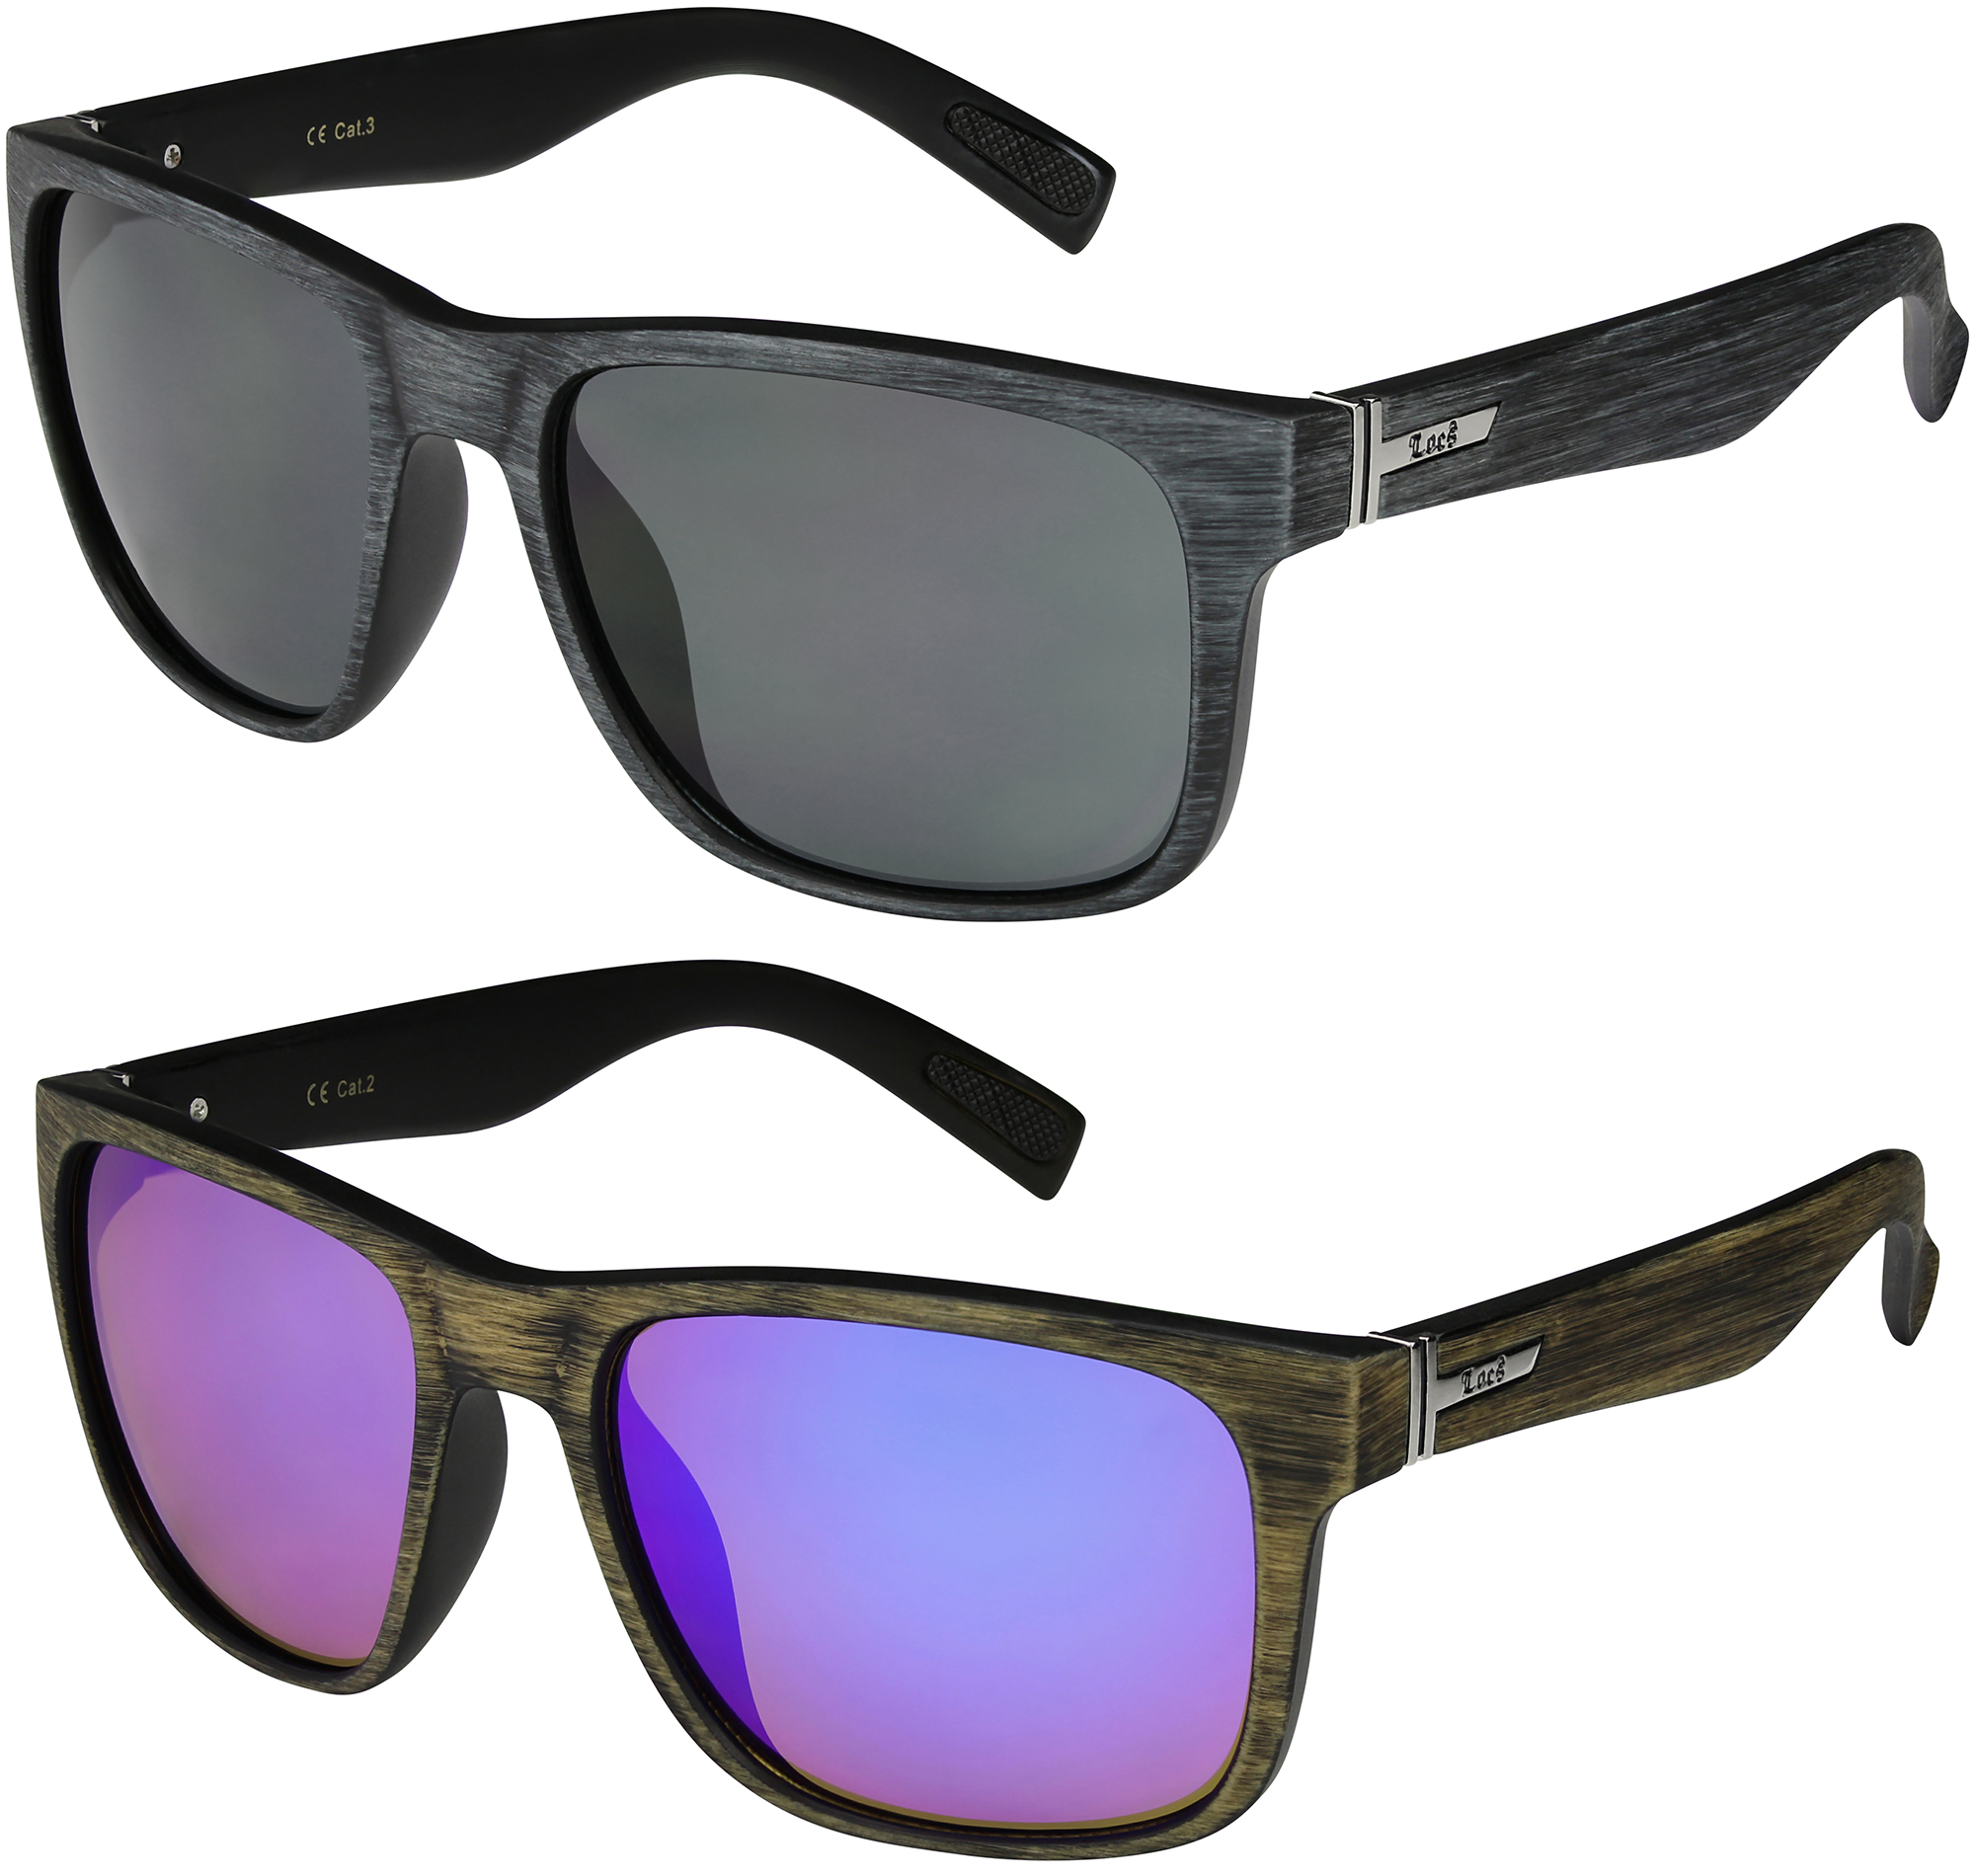 2er Pack Locs 91086 Choppers Sonnenbrille Brille Herren Frauen schwarz weiß matt 